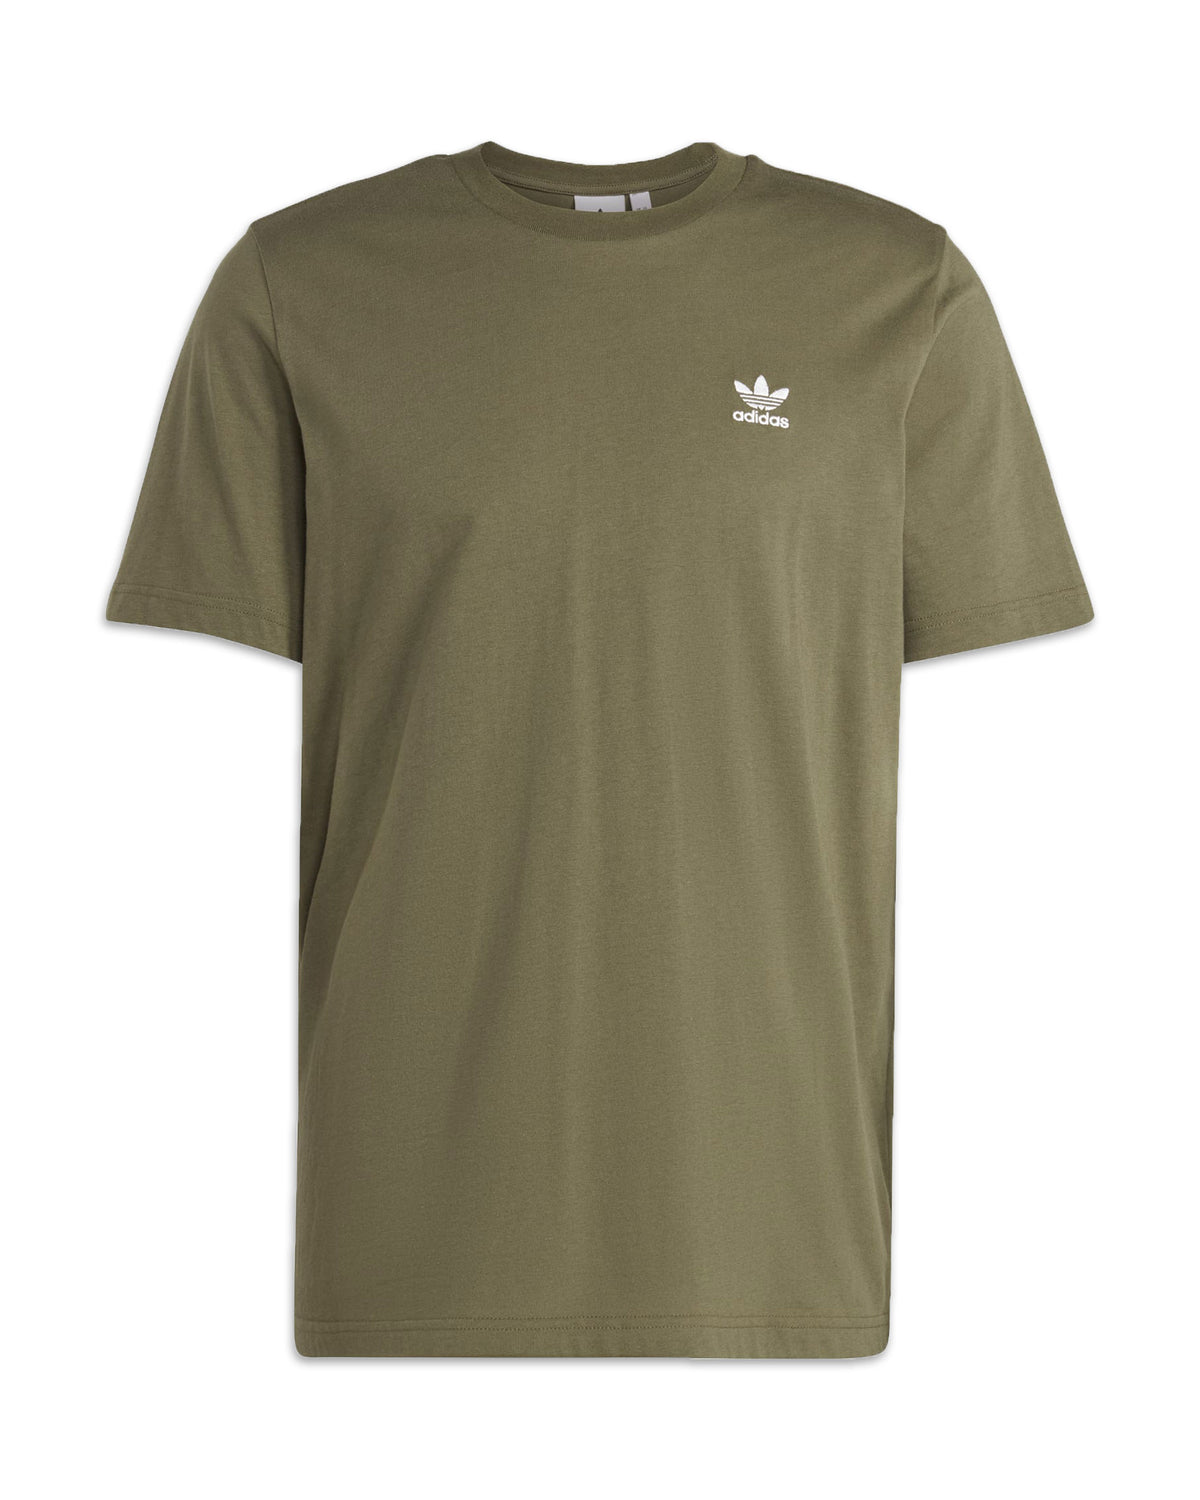 Adidas Originals Essential Tee Verde Militare